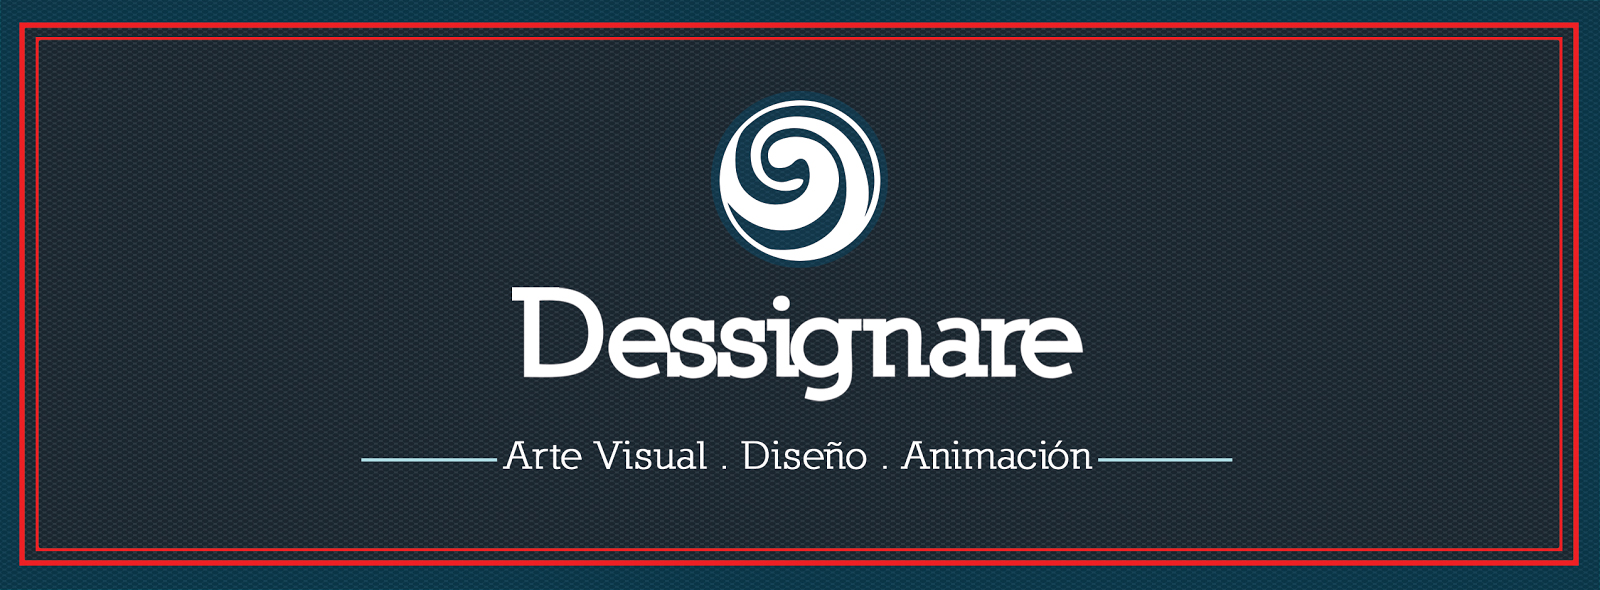 Plataforma mexicana para artistas visuales, Dessignare.